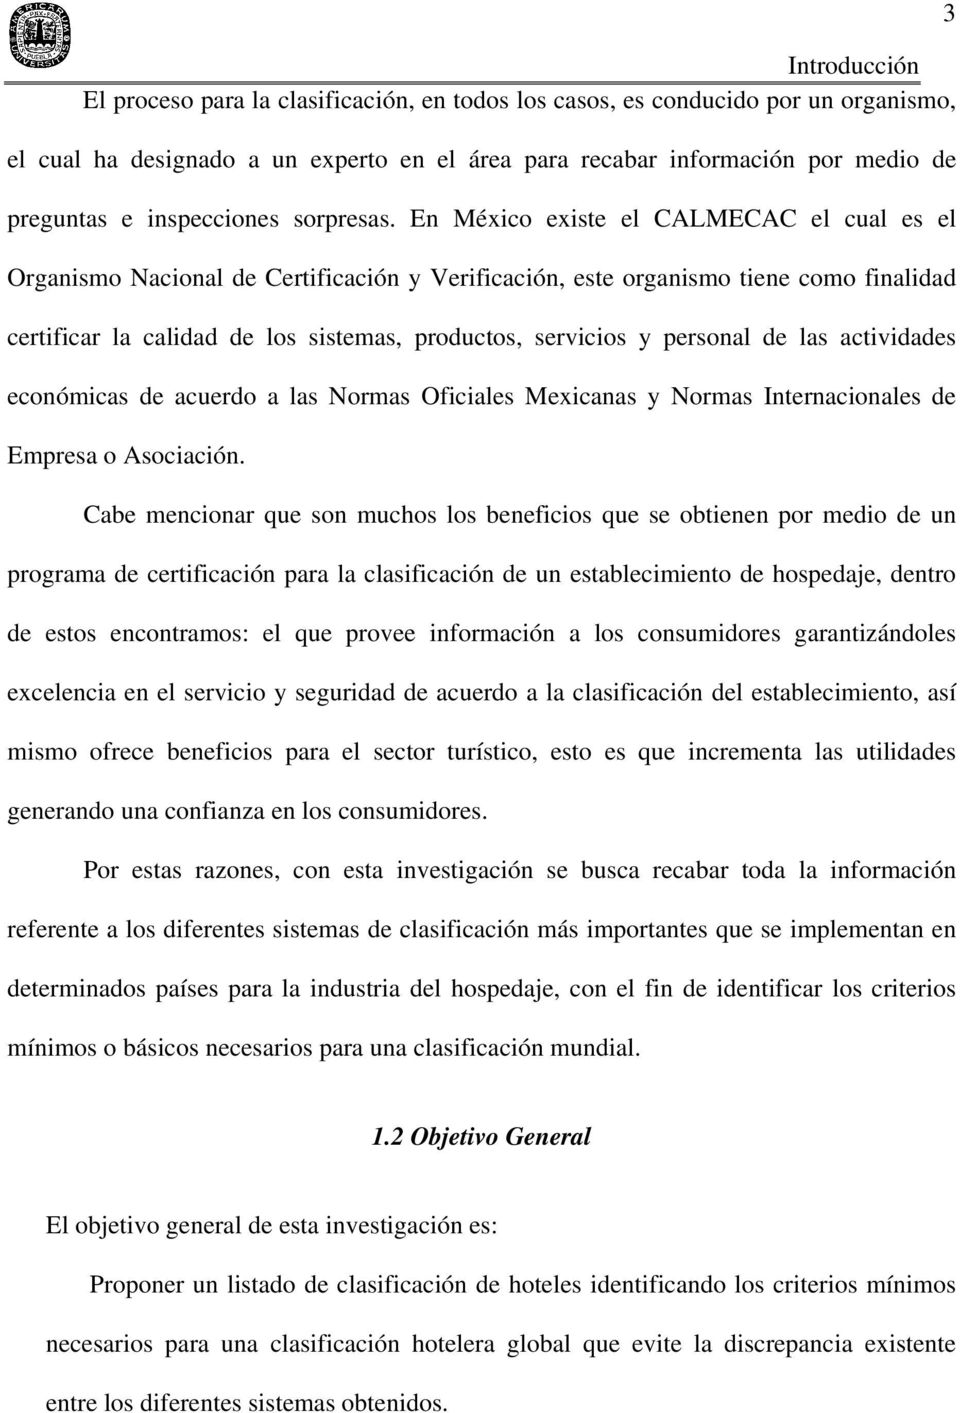 En México existe el CALMECAC el cual es el Organismo Nacional de Certificación y Verificación, este organismo tiene como finalidad certificar la calidad de los sistemas, productos, servicios y